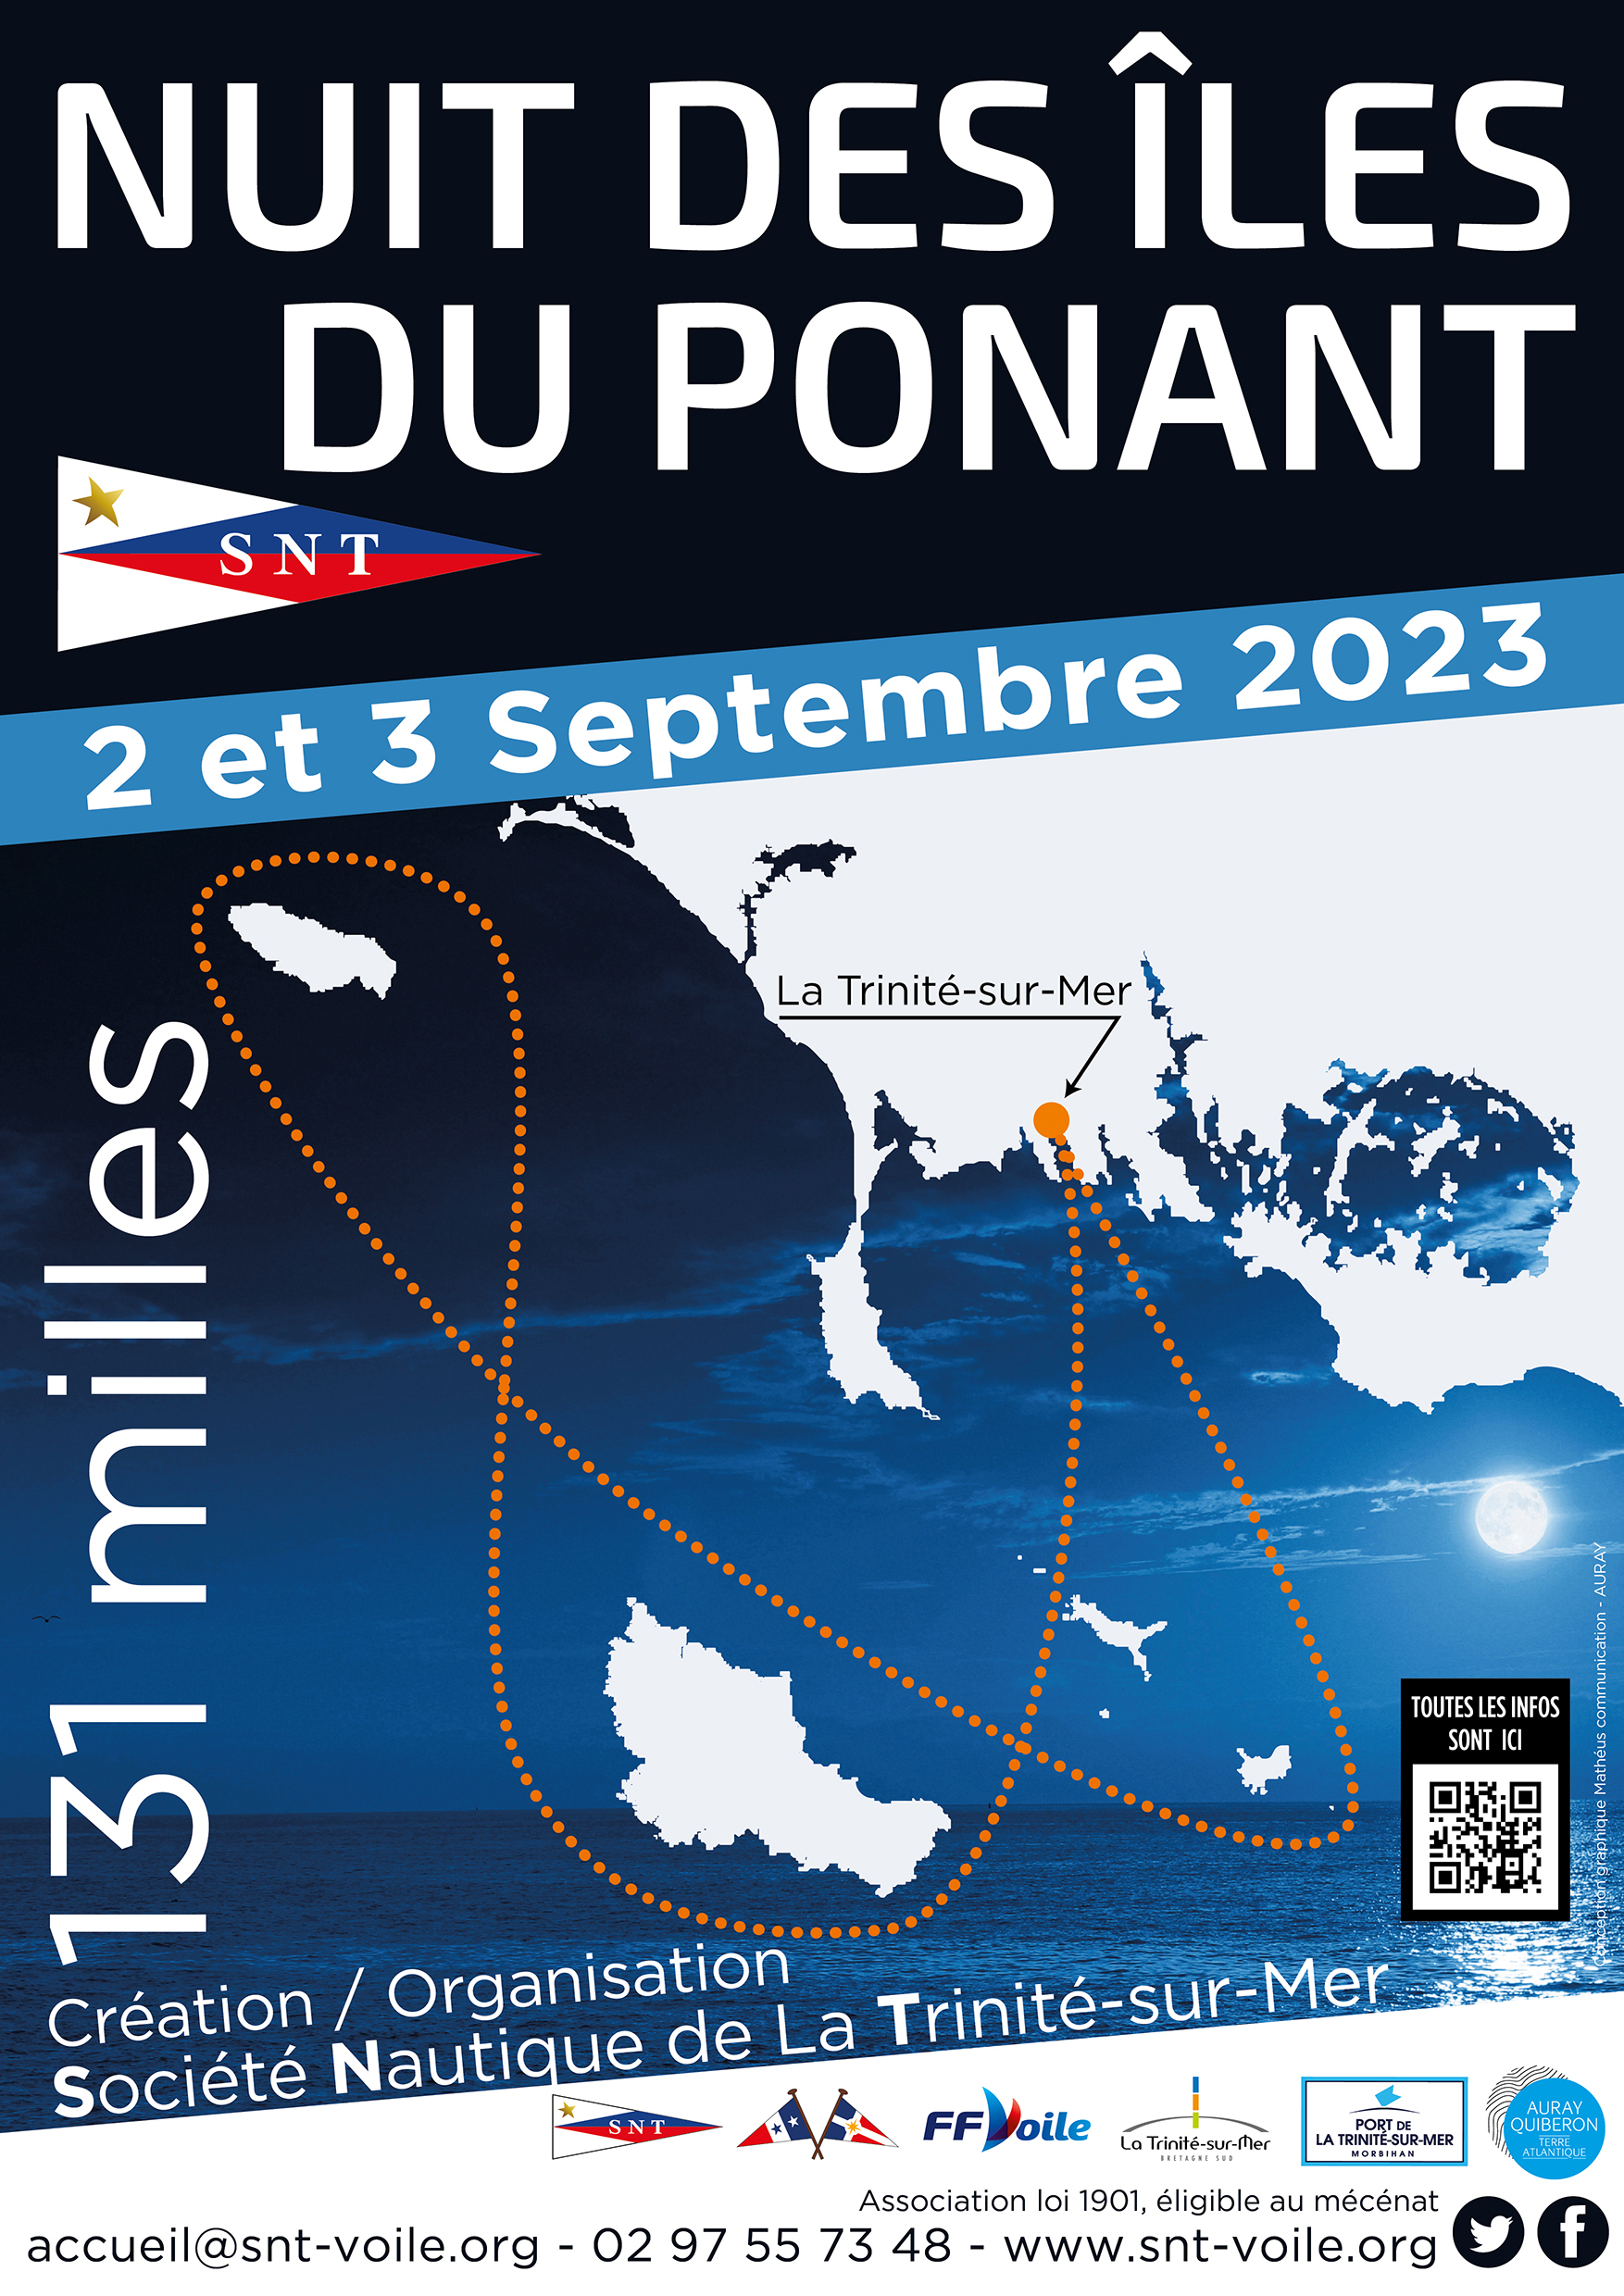 SNT - Affiche A3 - NUIT DES ILES DU PONANT 2023-02 - LD